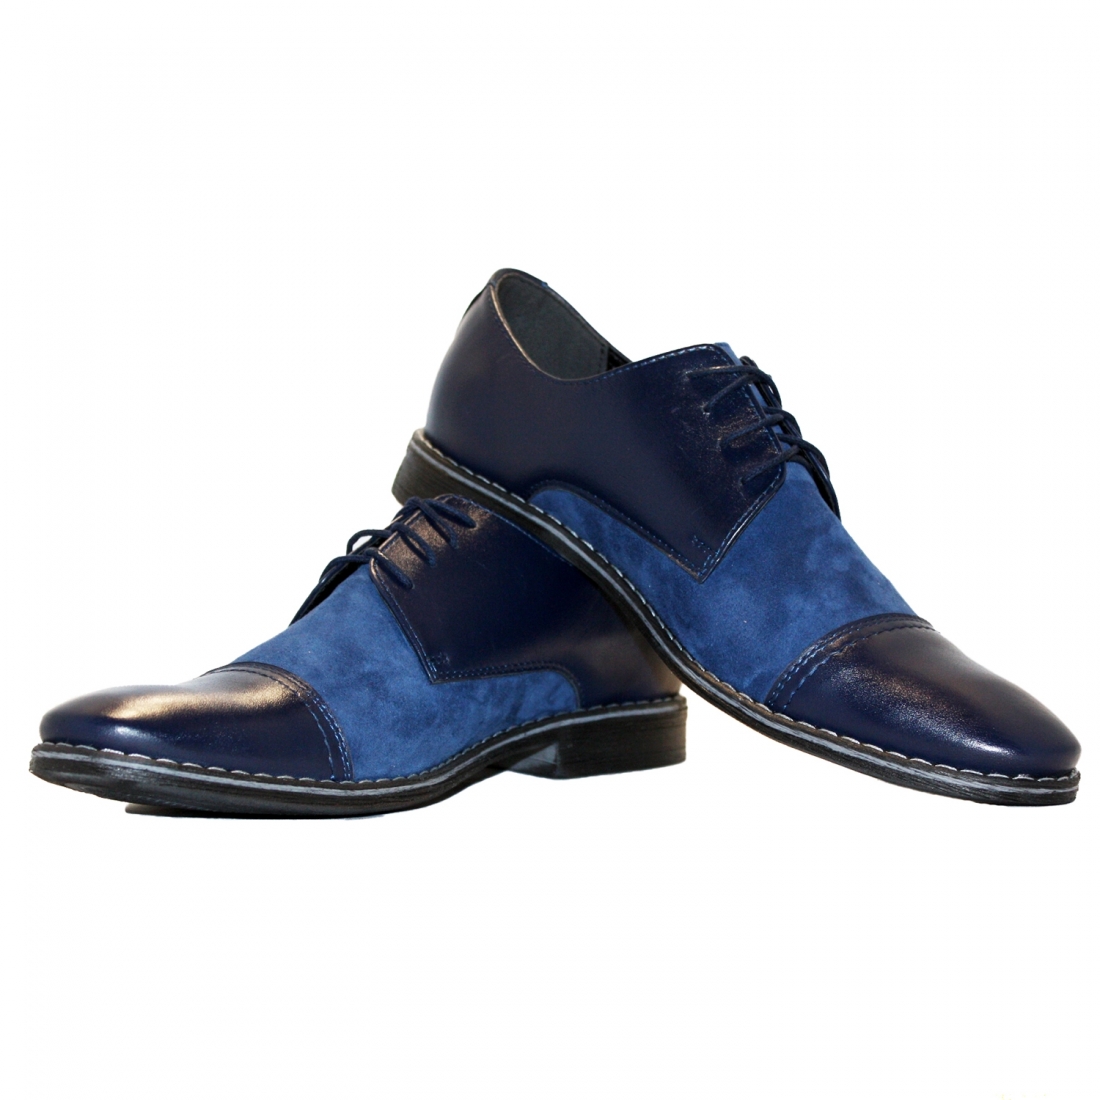 copy of Modello Oren - Scarpe Classiche - Handmade Colorful Italian Leather Shoes